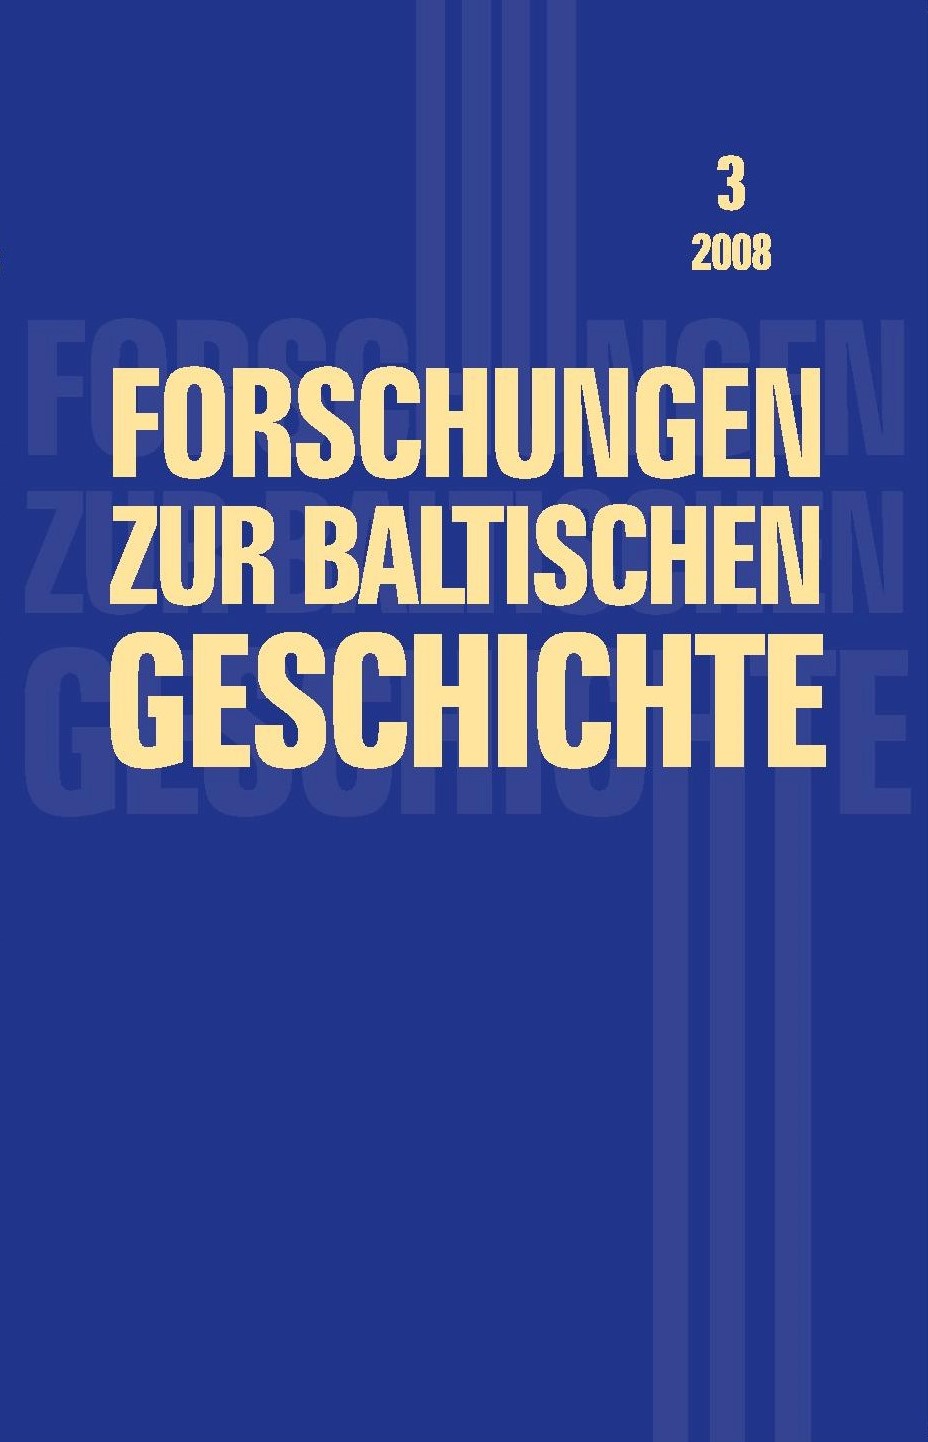 Forschungen zur baltischen Geschichte 3 (2008)